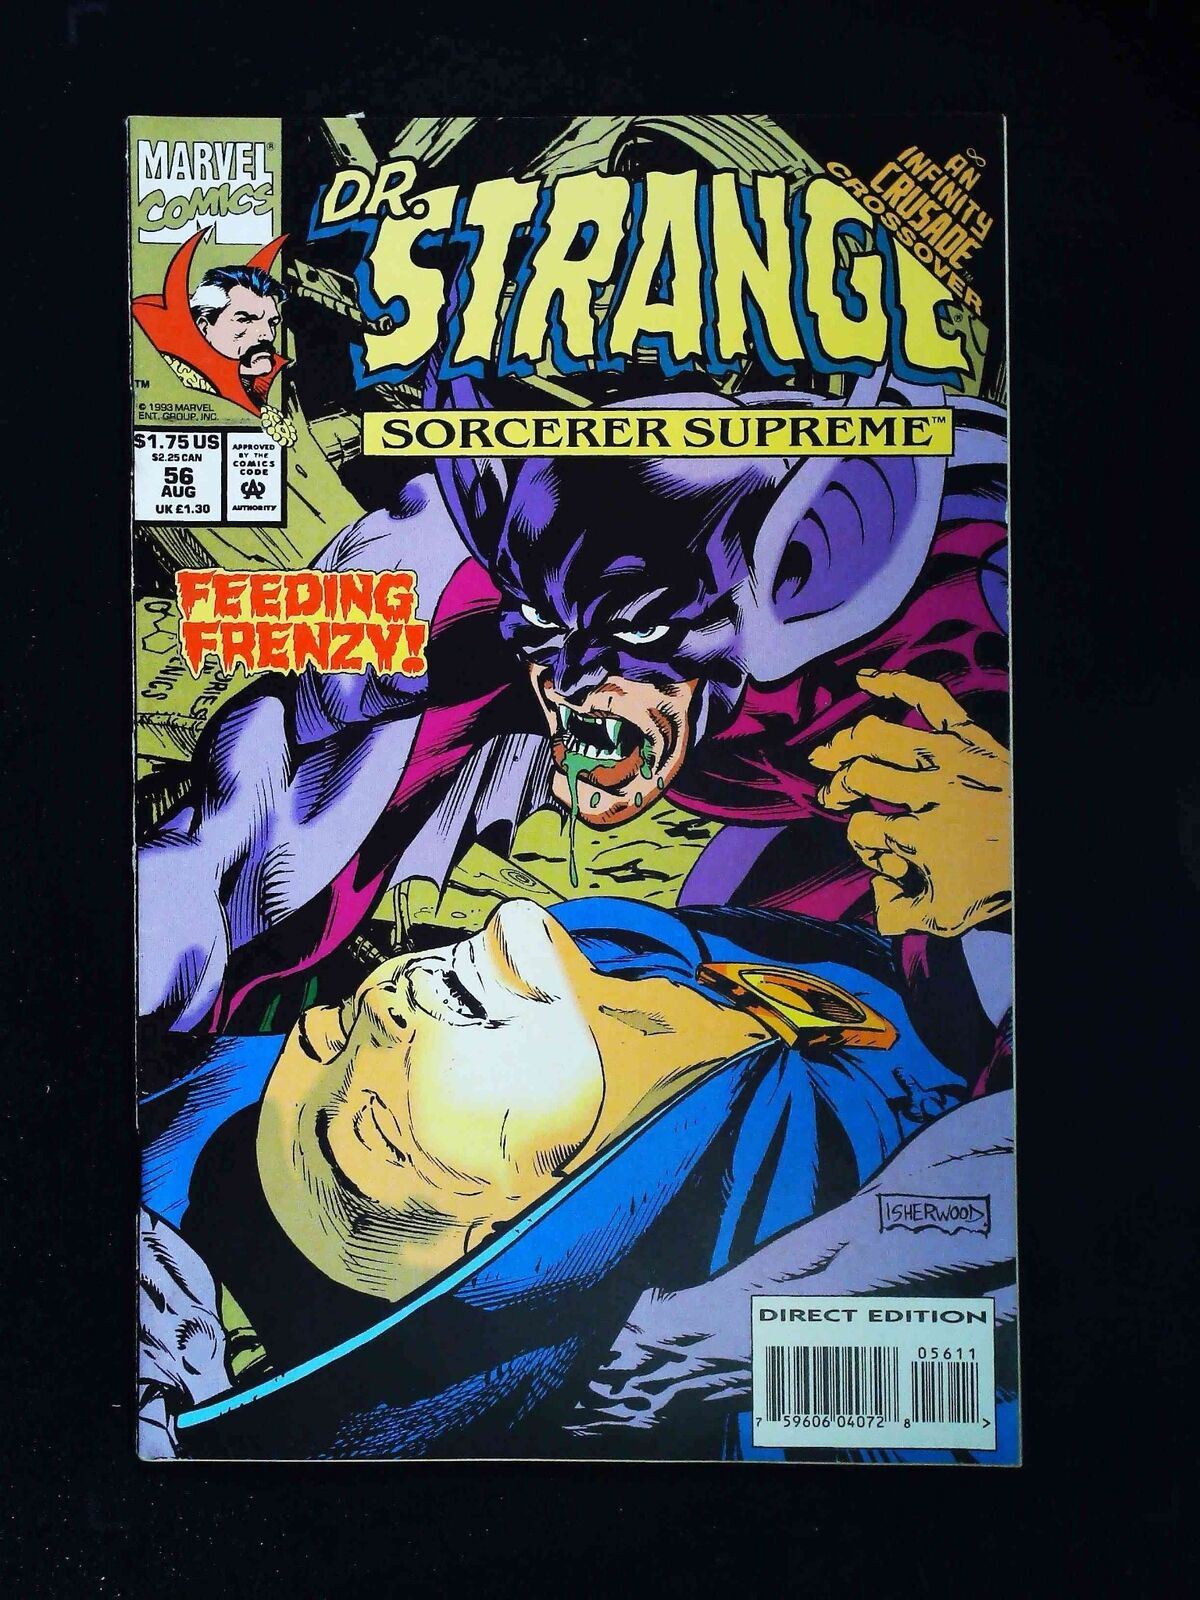 Doctor Strange #56 (3Rd Series) Marvel Comics 1993 Vf-